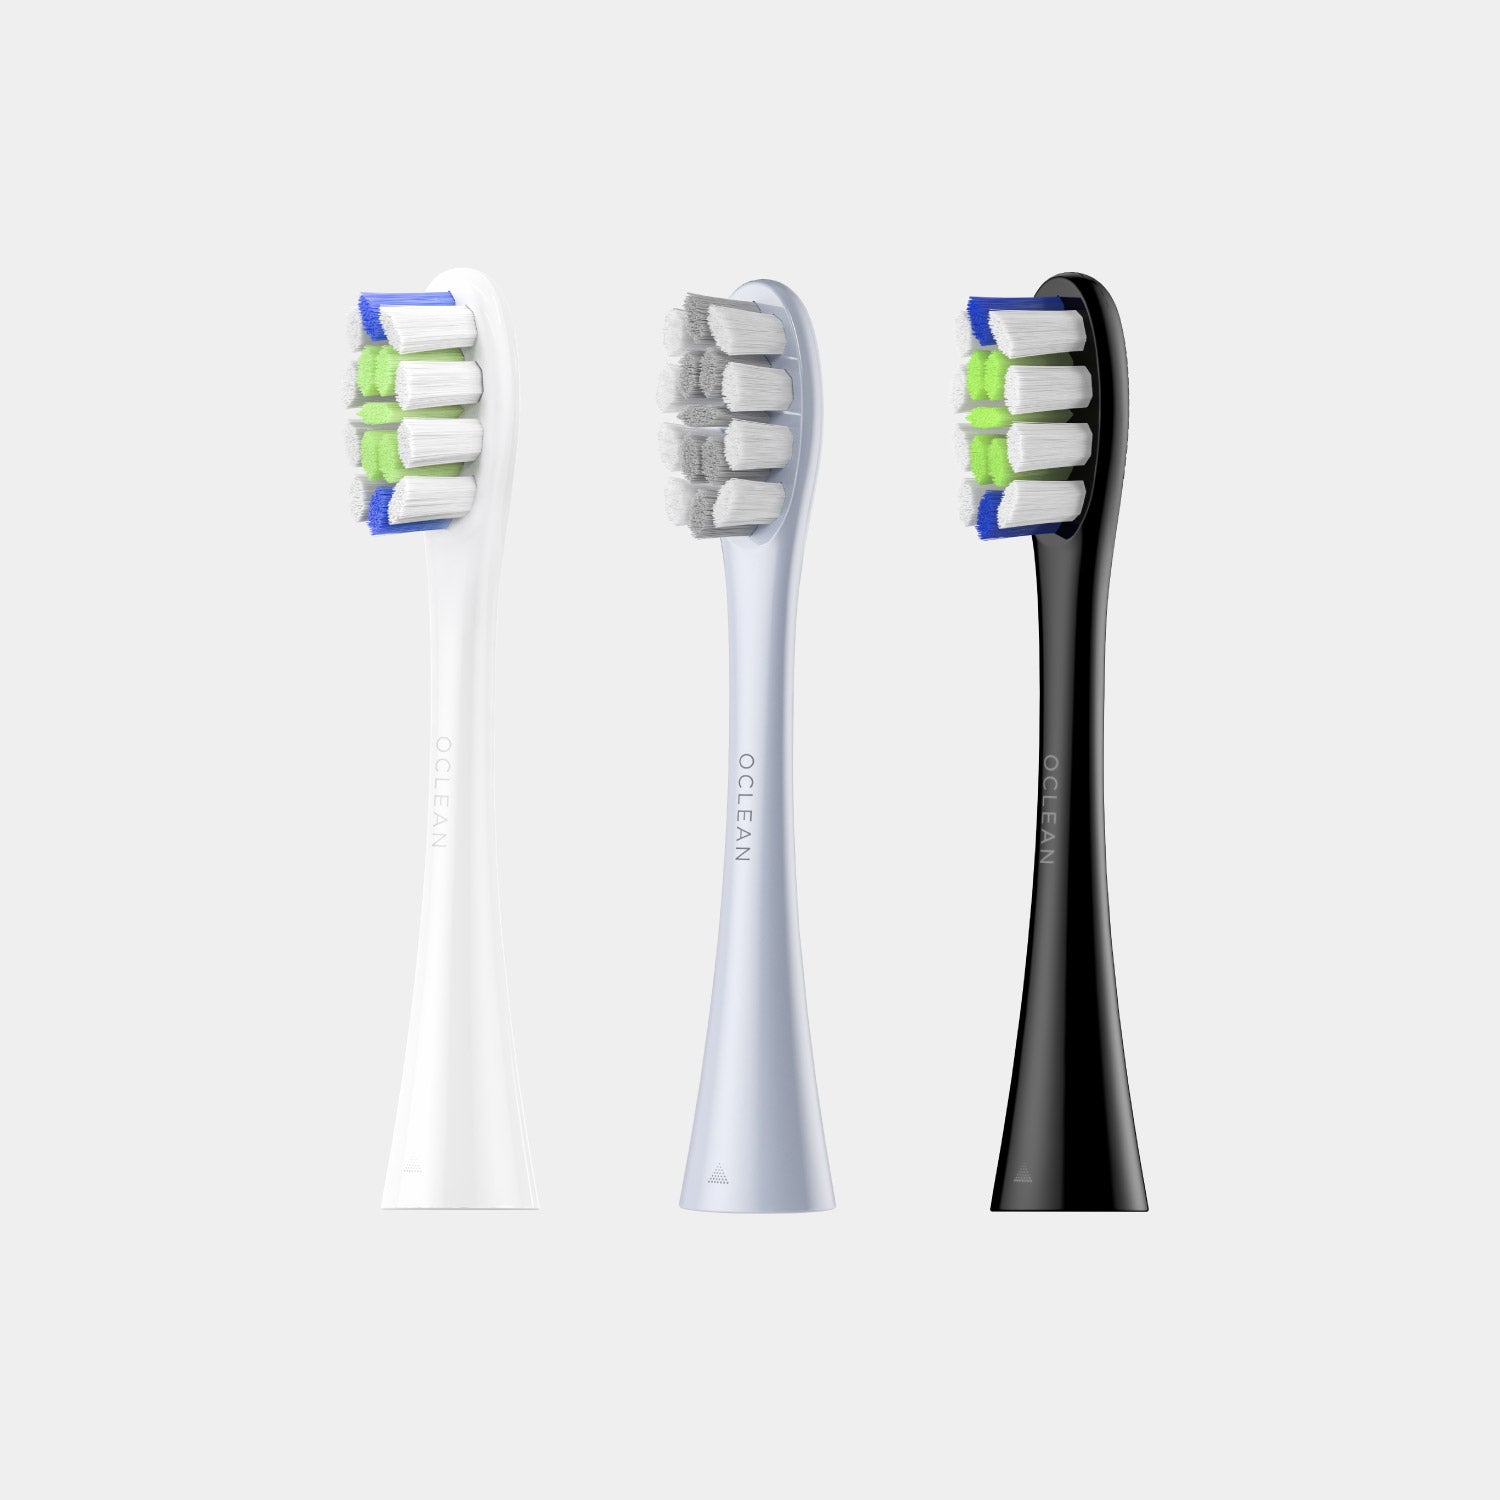 Oclean Testine di ricambio per spazzolini - Testine di ricambio per spazzolini - Negozio globale Oclean